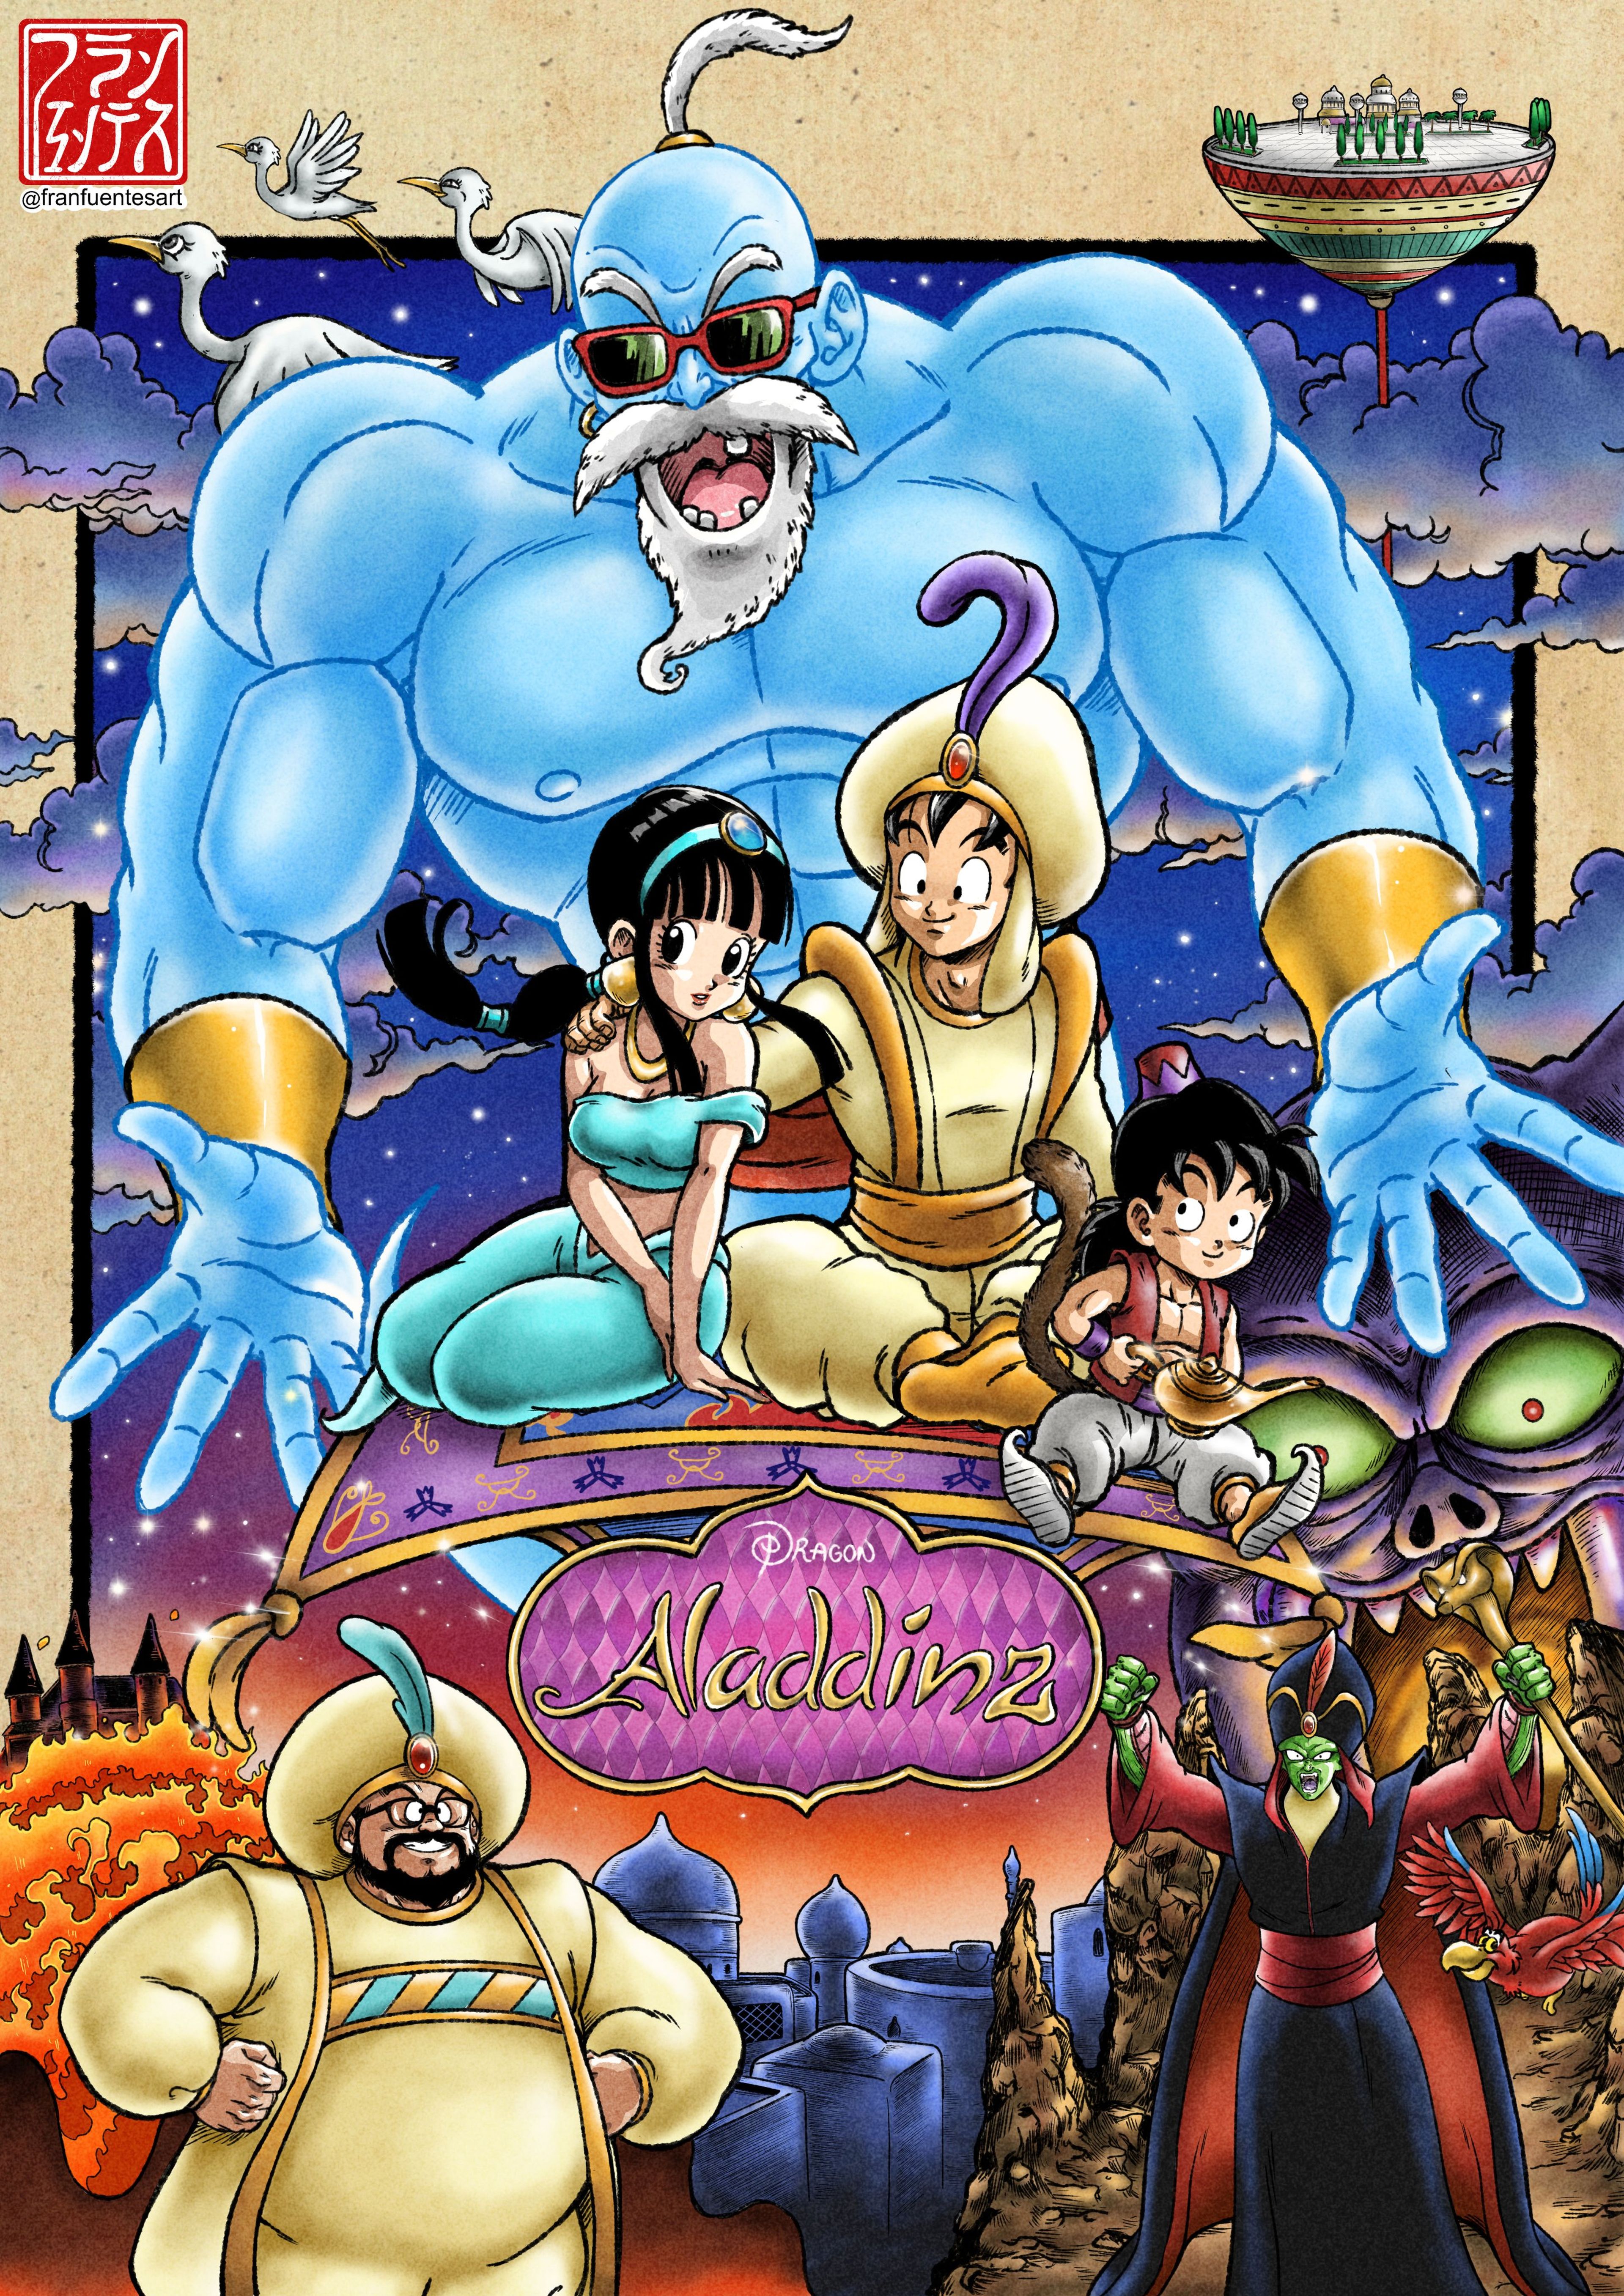 Dragon Ball - Así son los personajes de la serie fusionados con Disney